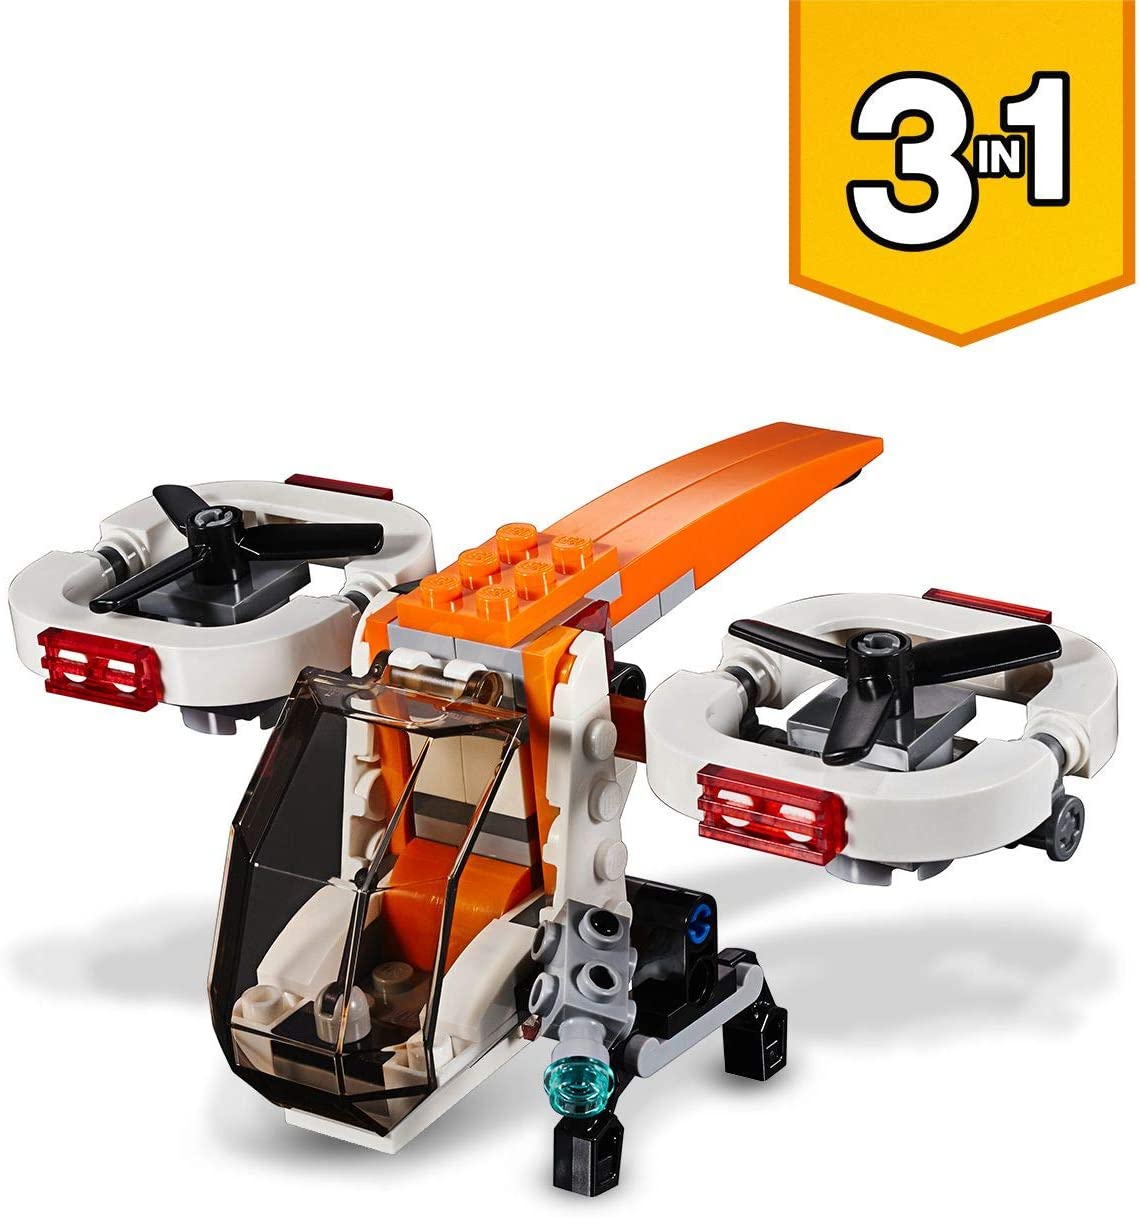 LEGO CREATOR 31071 Drone esploratore (3 in 1)